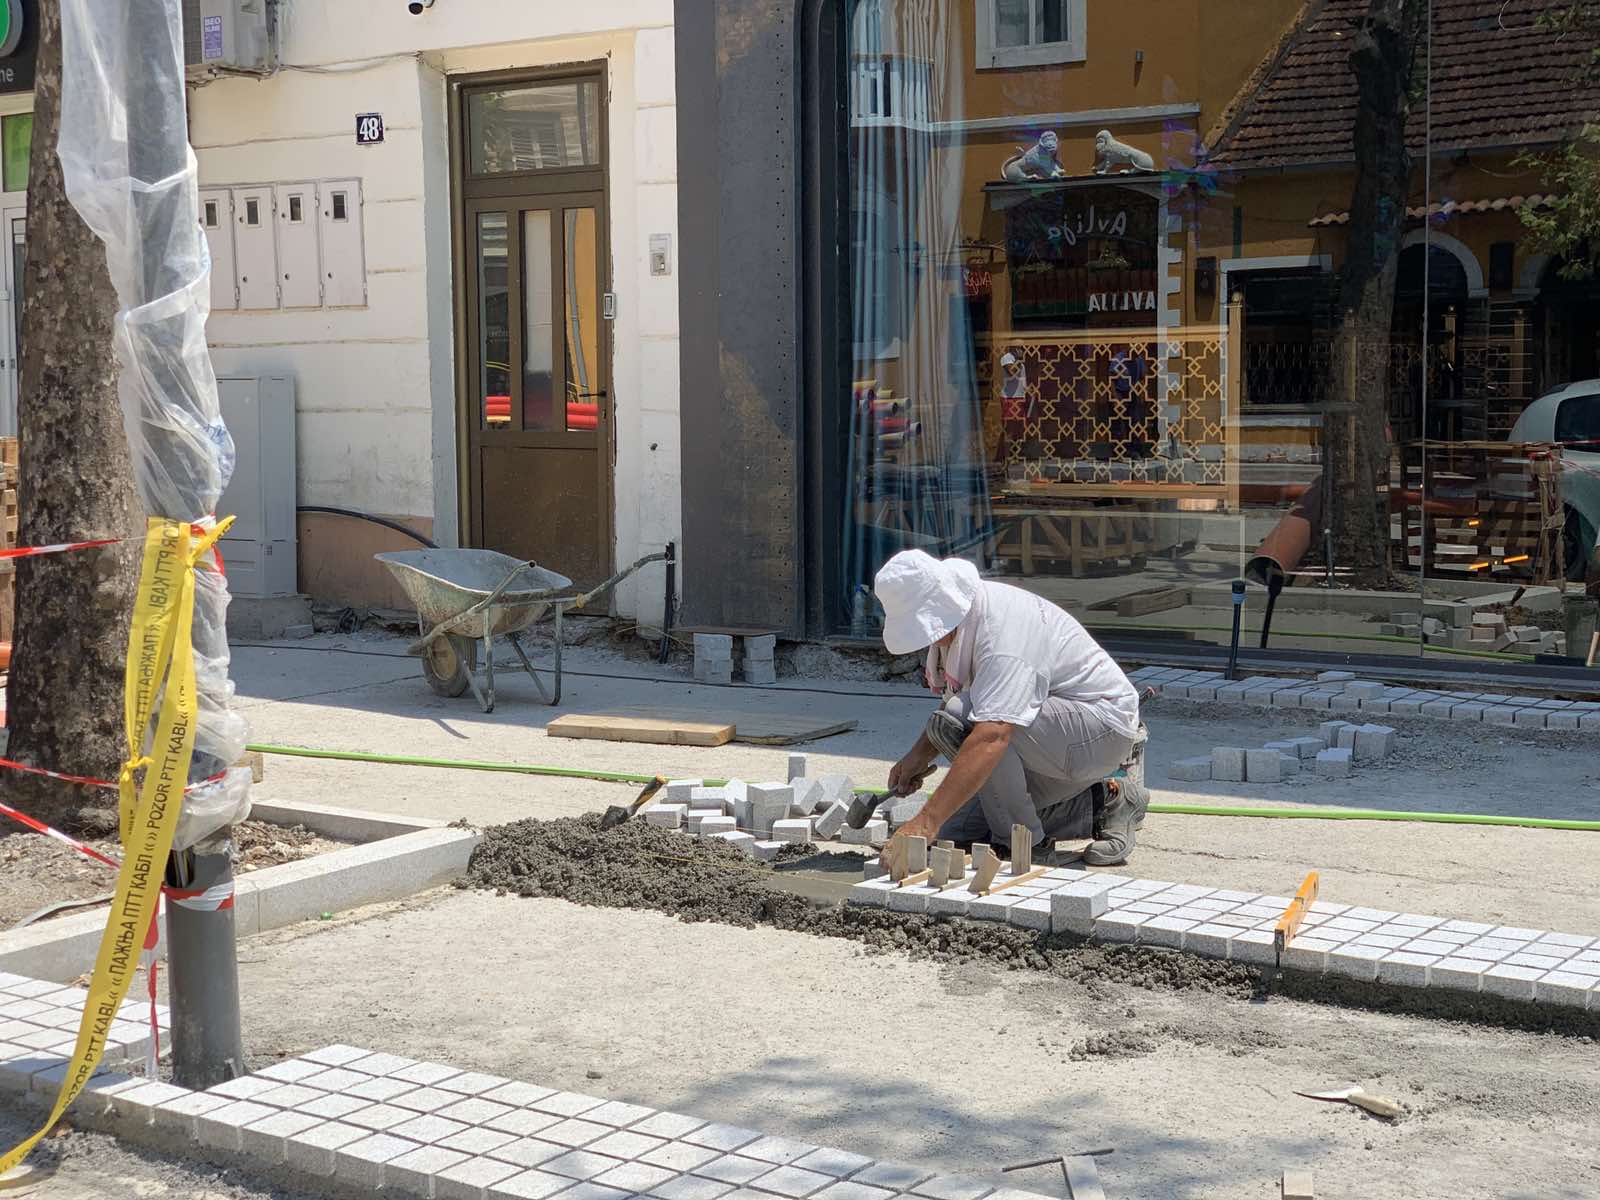 Obogaćuje se biljni fond u samom centru grada: Njegoševa ulica dobija dodatnih sedam sadnica platana